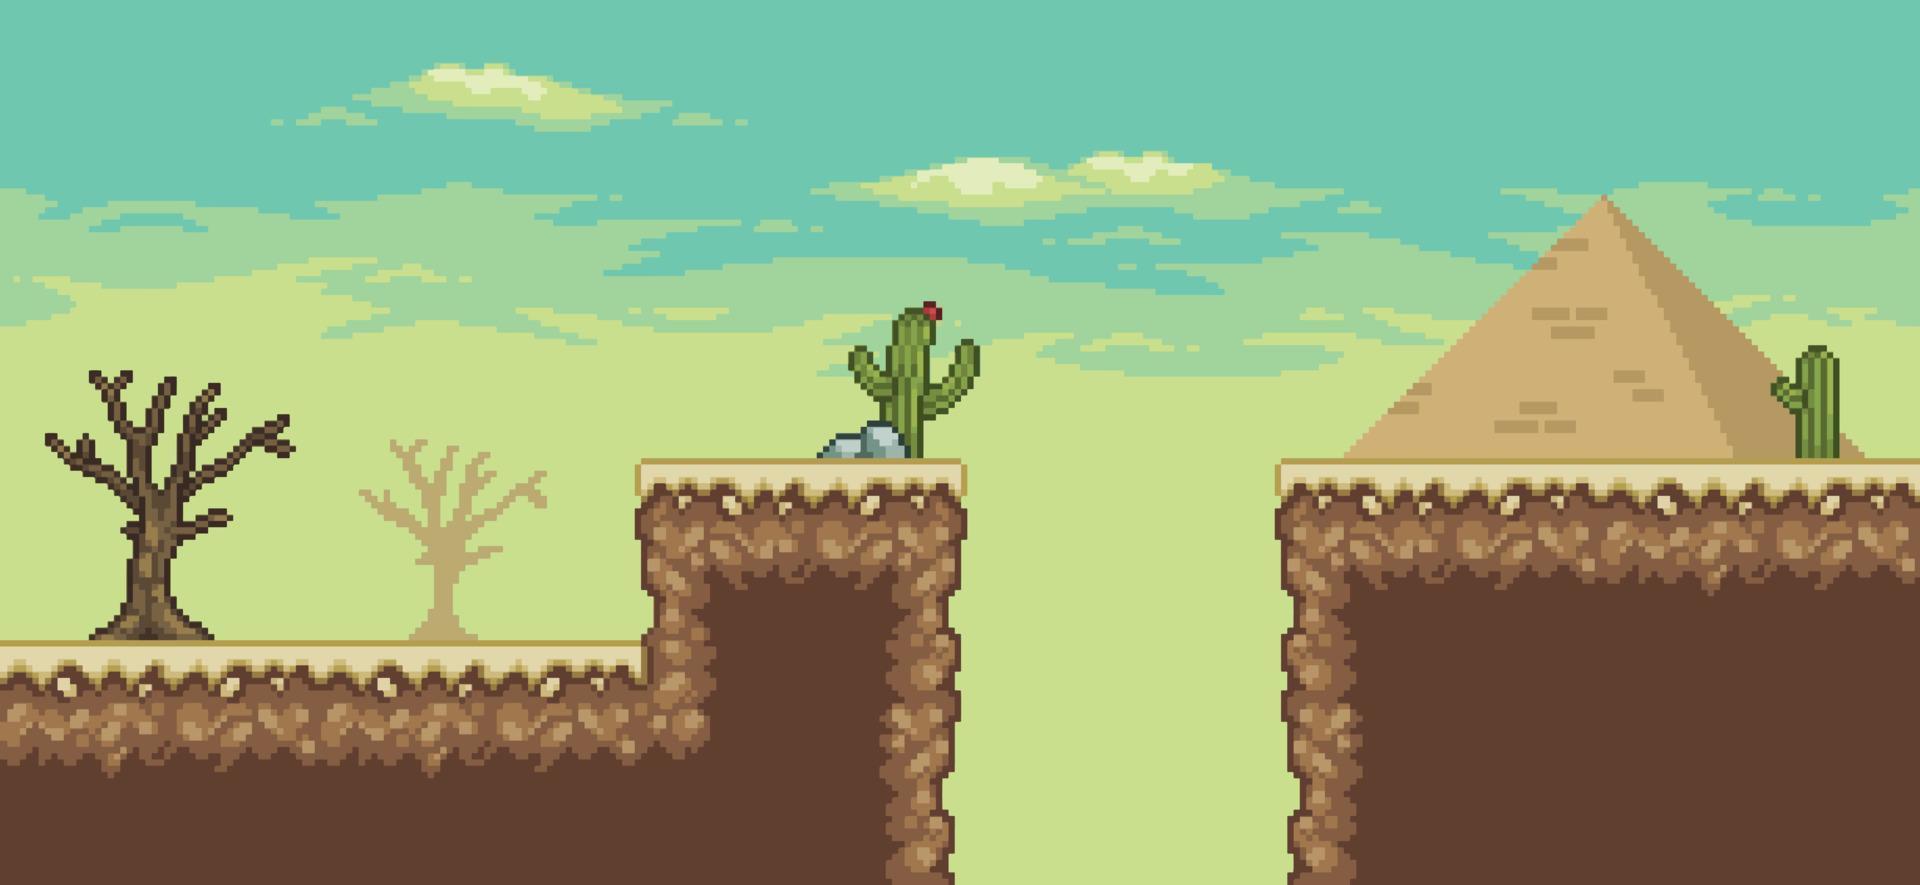 scena di gioco del deserto pixel art con piramide, palma, cactus, albero secco 8bit sfondo vettore